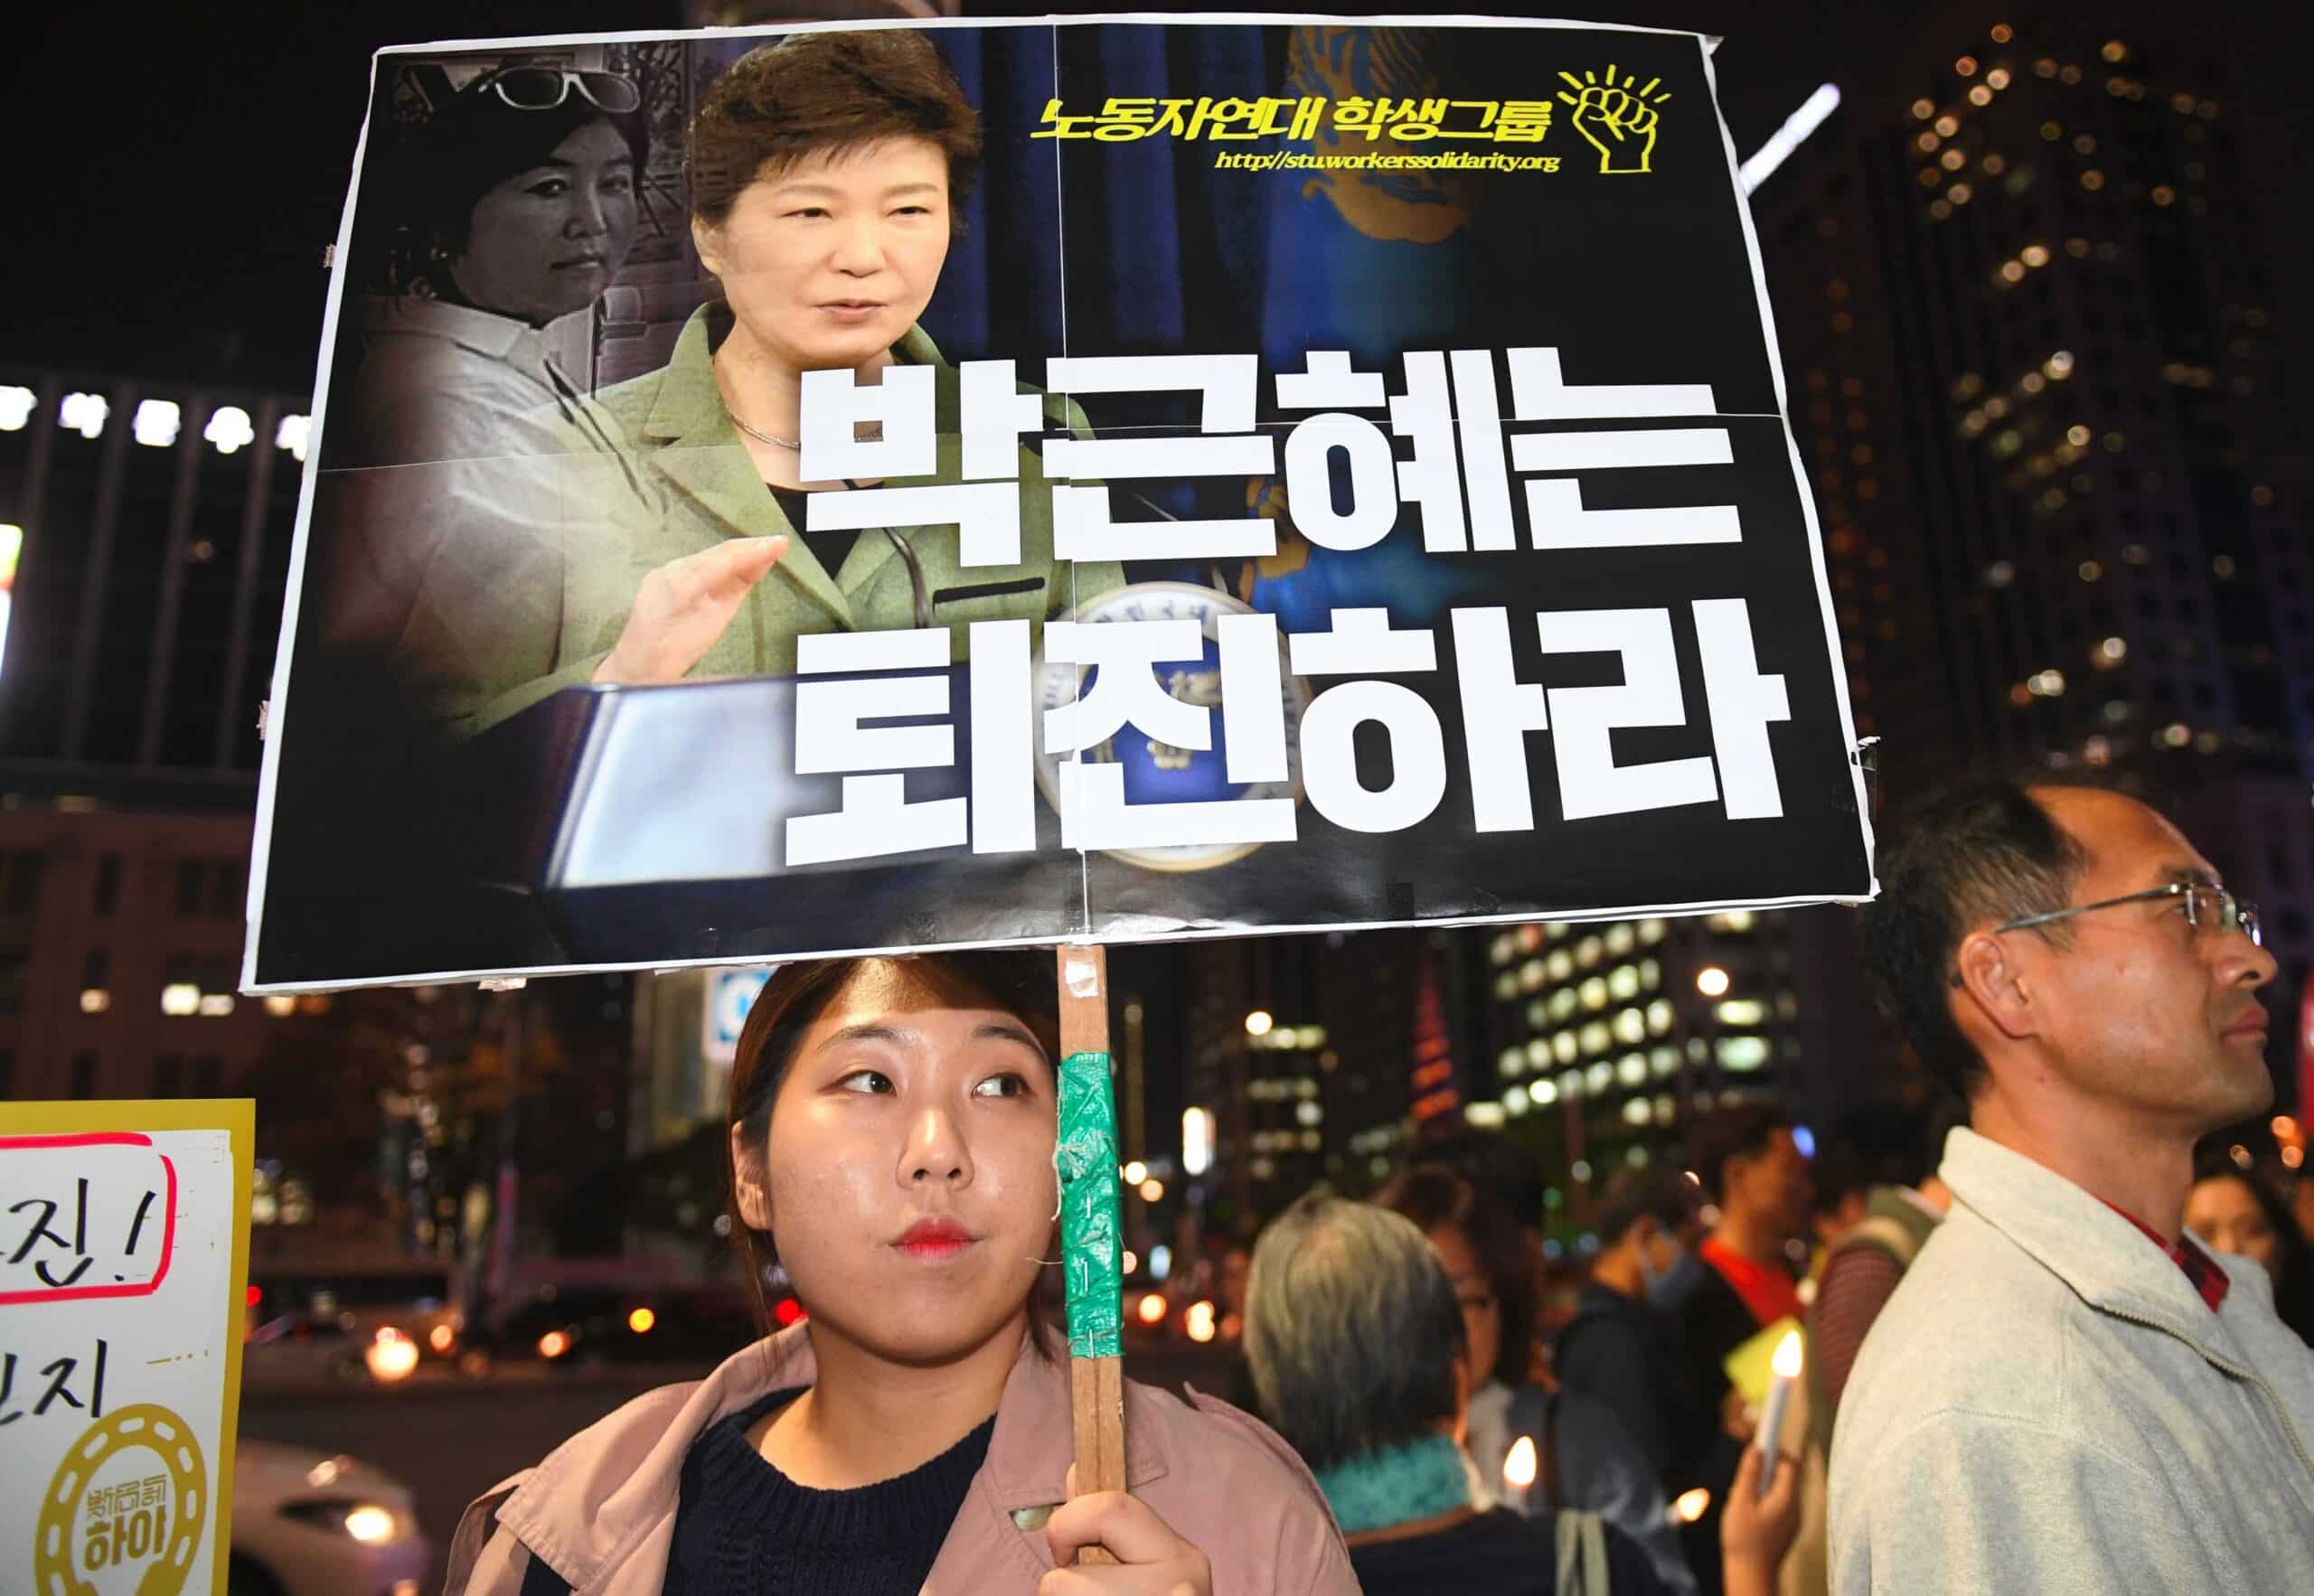 OPINIÓN: En medio del escándalo ¿Qué pasará con la presidencia de Park Geun-hye? (Parte 1)